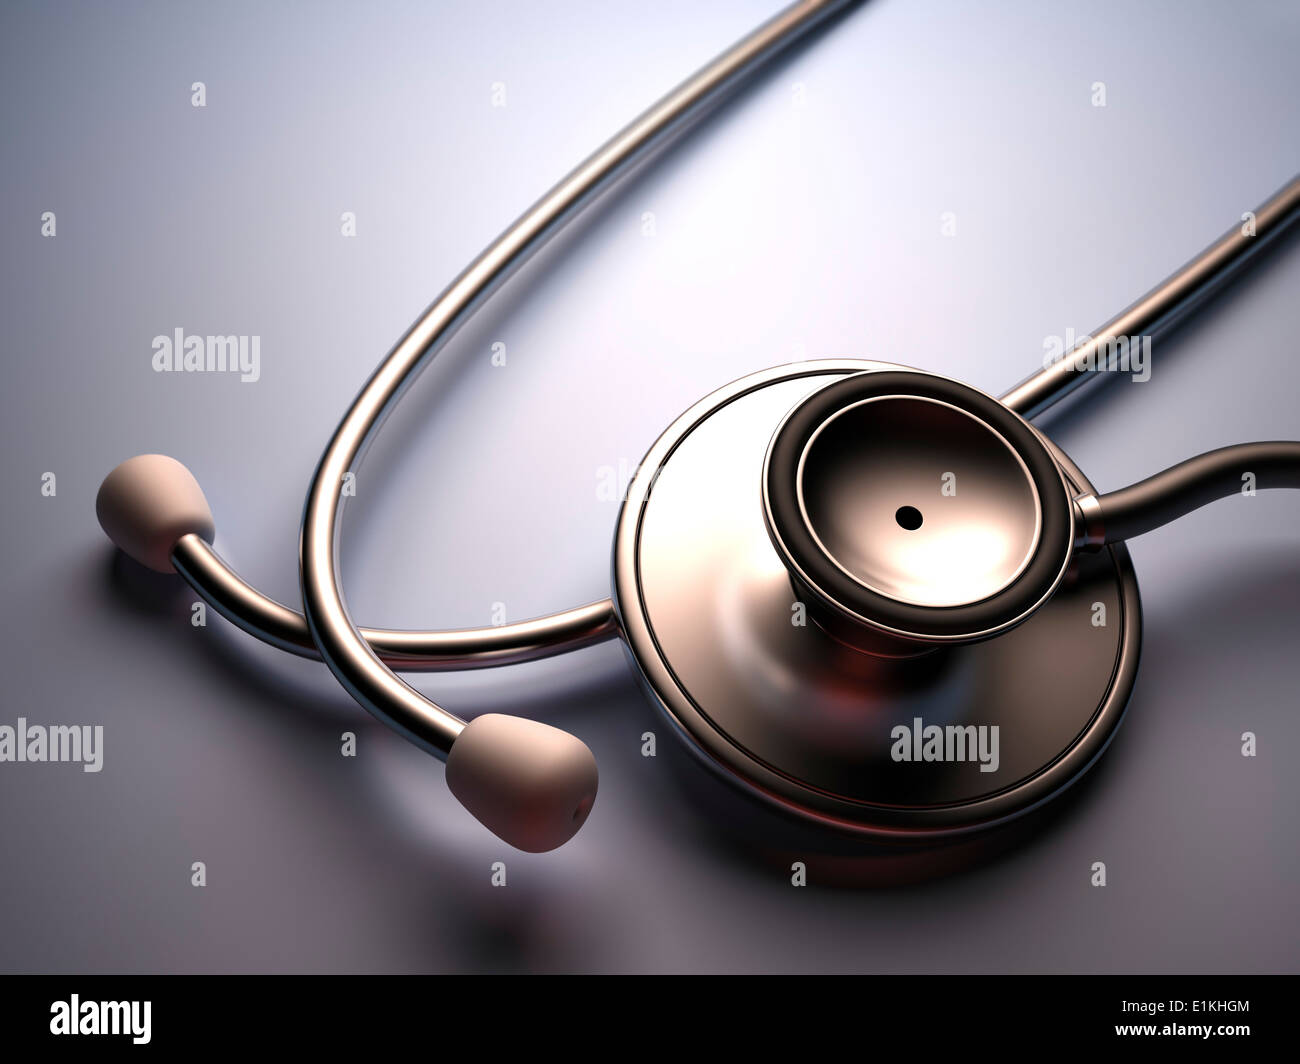 Stethoscope against plain background. Stock Photo